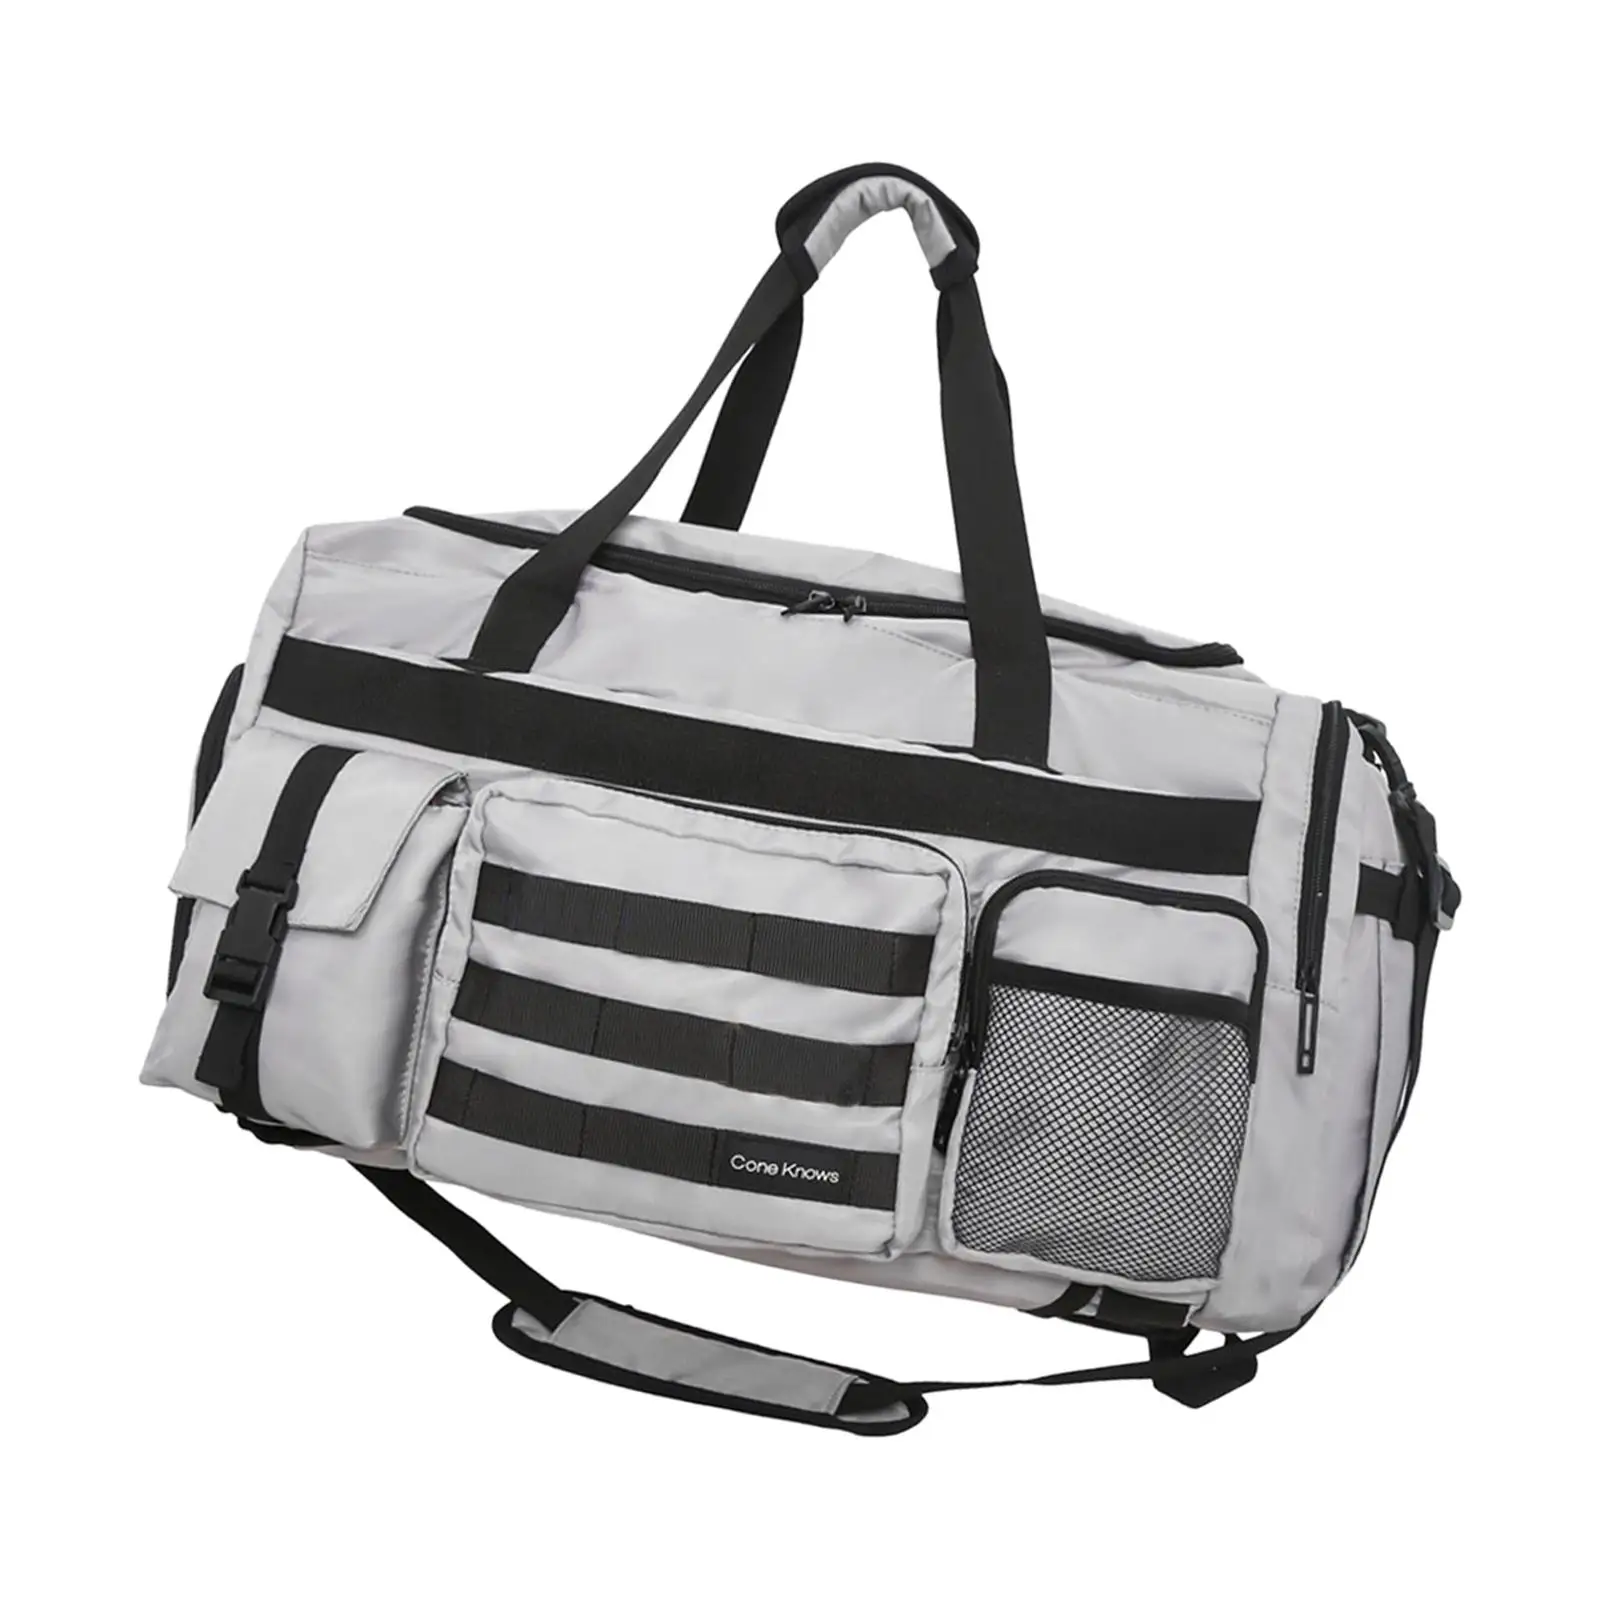 Duffle Backpack Sports Gym Bag Weekender Bag Men Women Toiletry Storage Bag Shoulder Bag for Camping Outddor Exercise Fitness